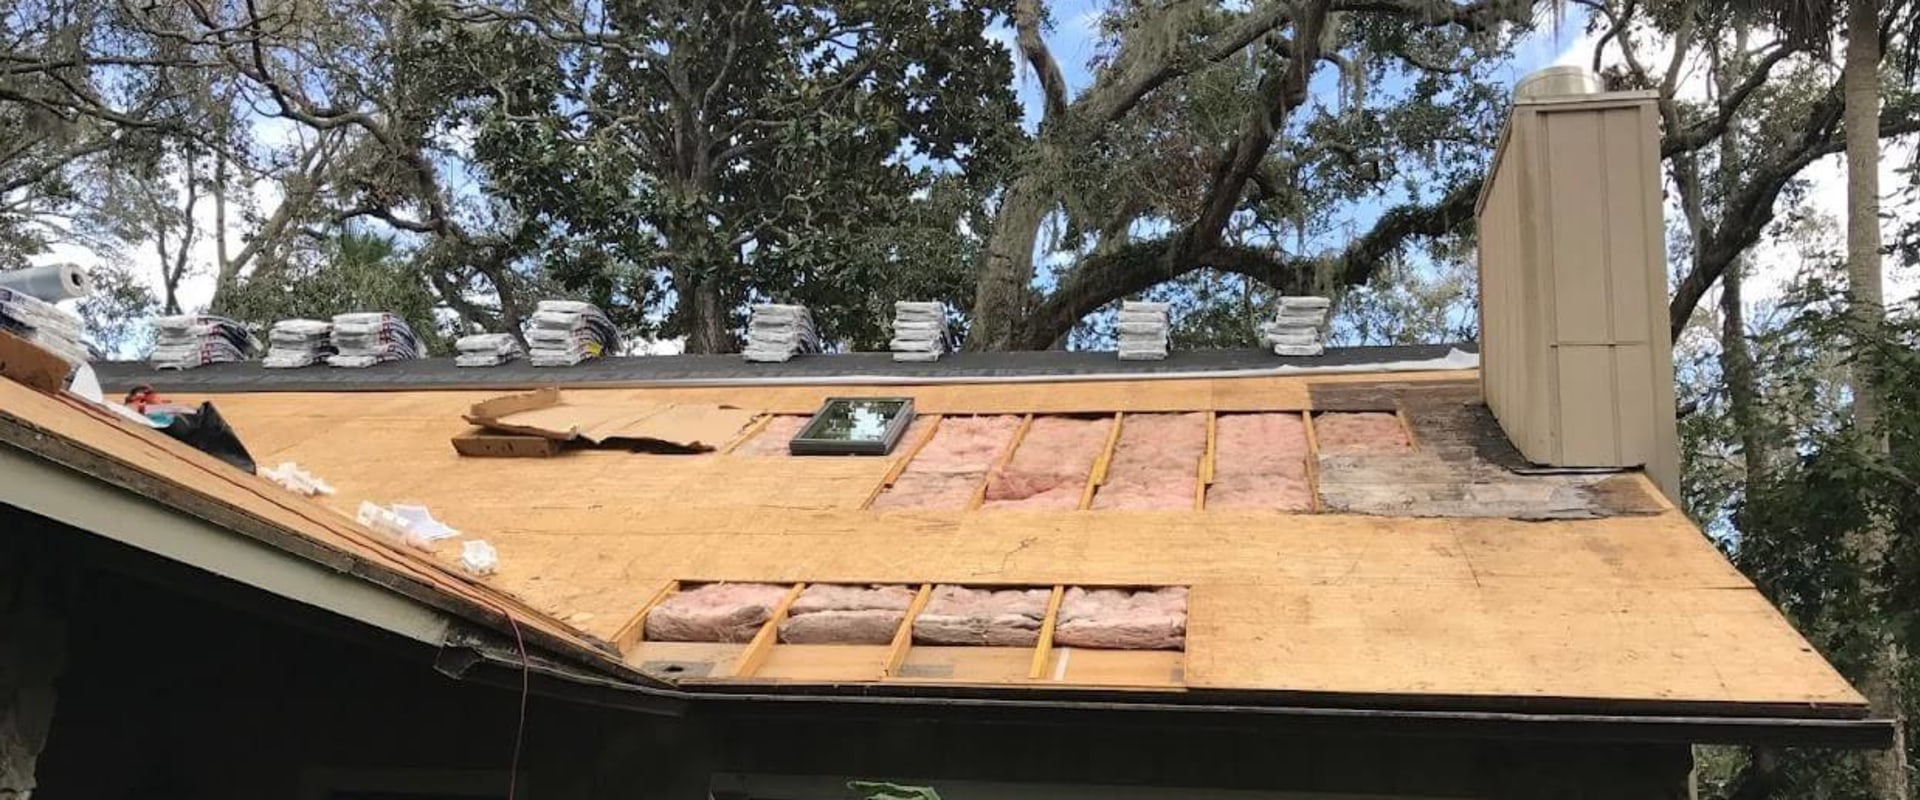 Should i make a claim for wind damaged roof?